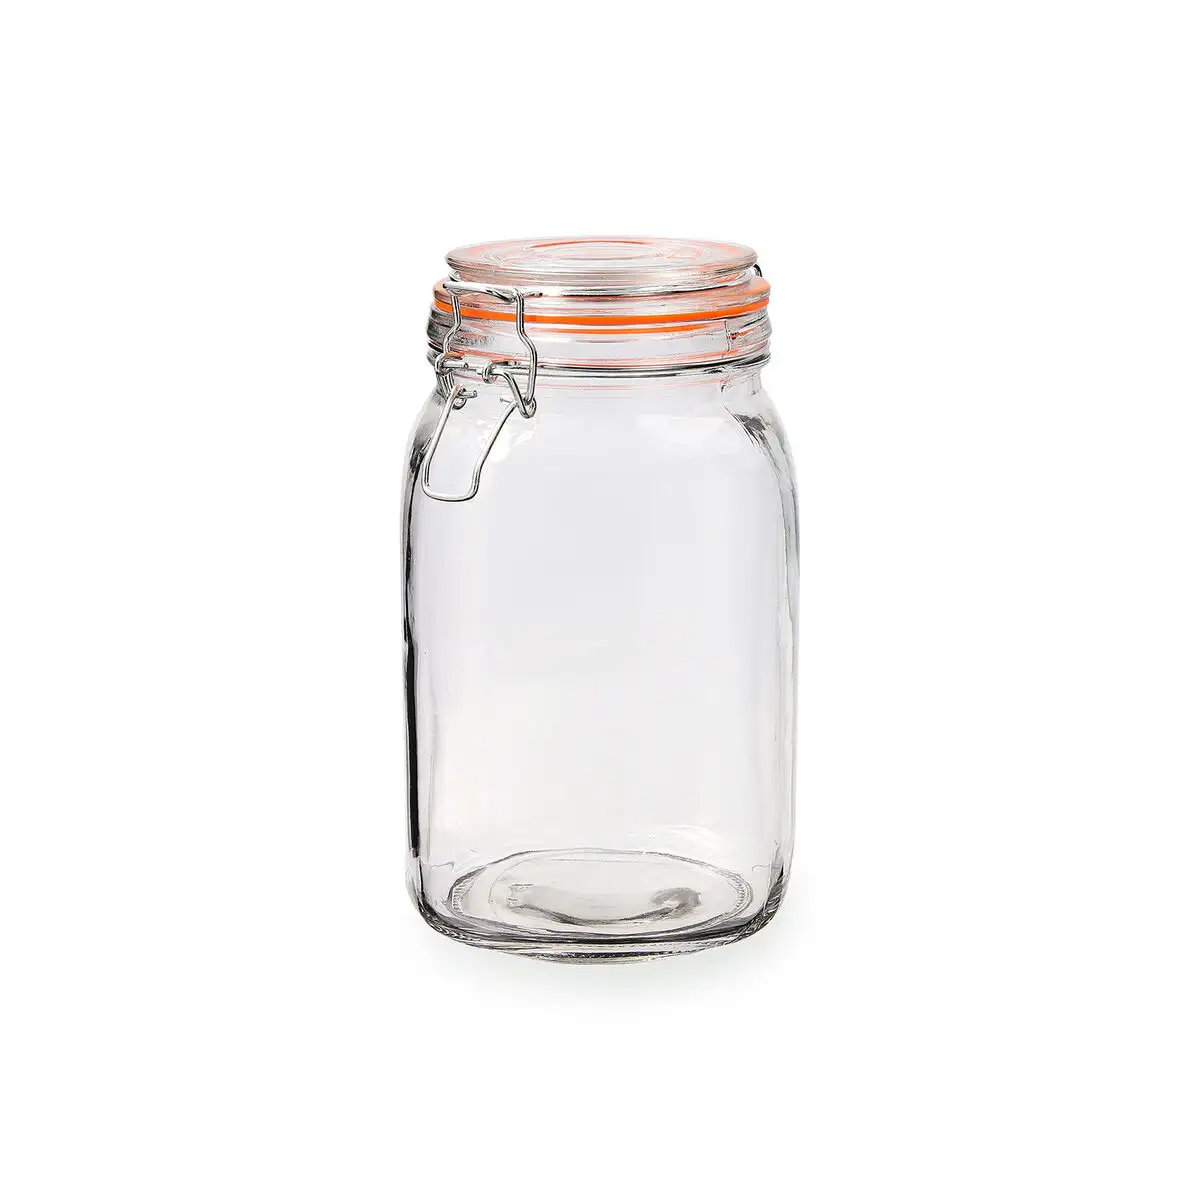 Pot en verre quid new canette transparent verre 1 5l pack 6x _8590. DIAYTAR SENEGAL - Où Chaque Produit est une Promesse de Qualité. Explorez notre boutique en ligne et choisissez des produits qui répondent à vos exigences élevées.